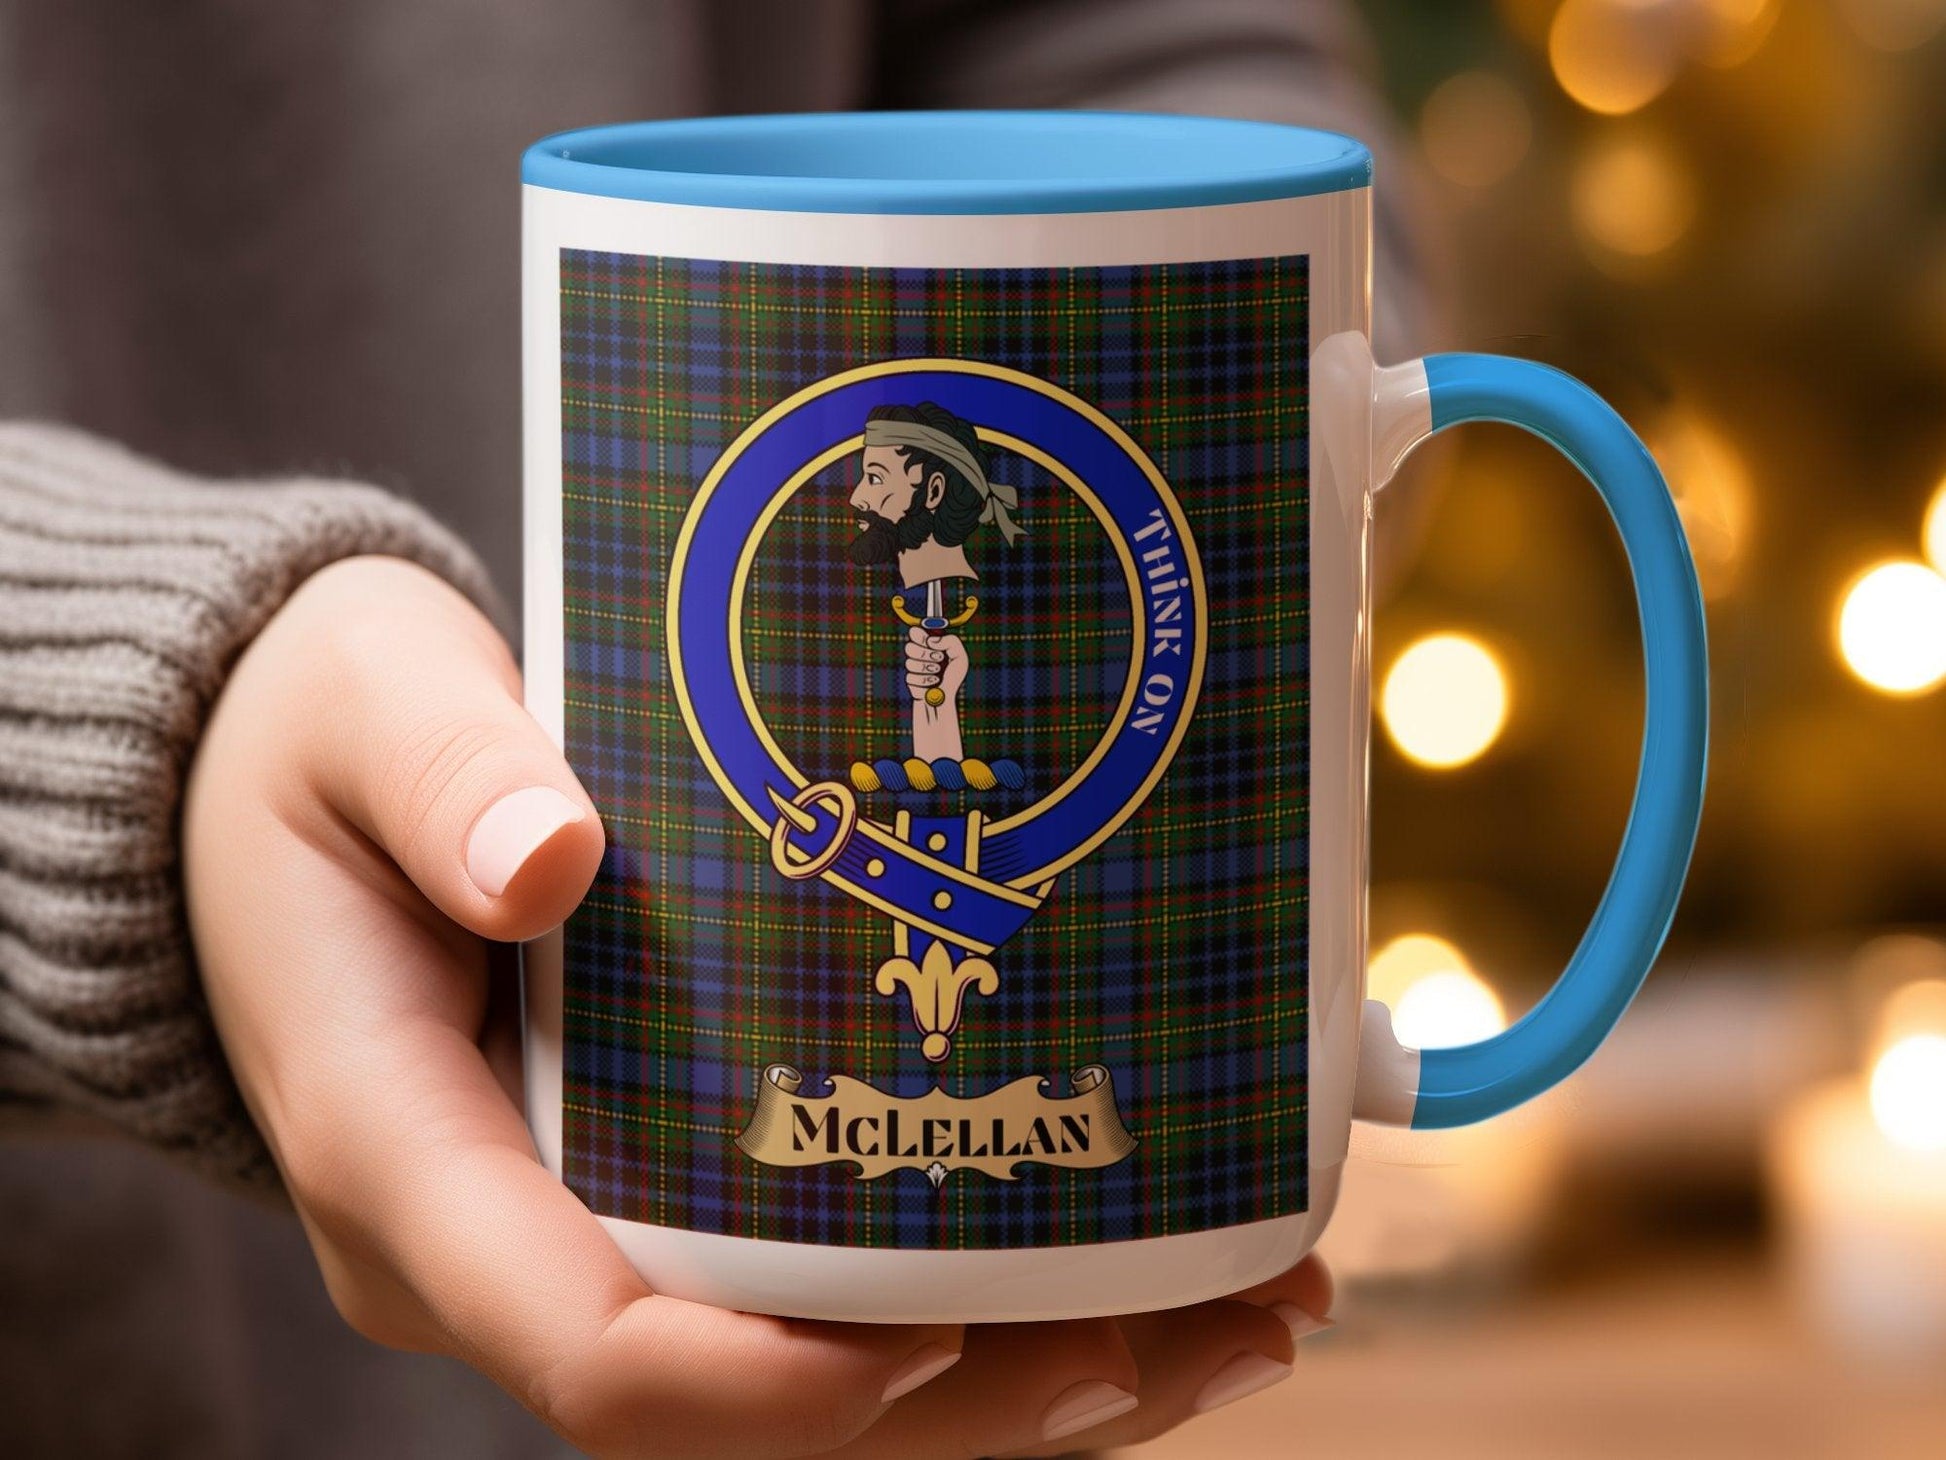 McLellan Clan Tartan Badge Scottish Heritage Mug - Living Stone Gifts